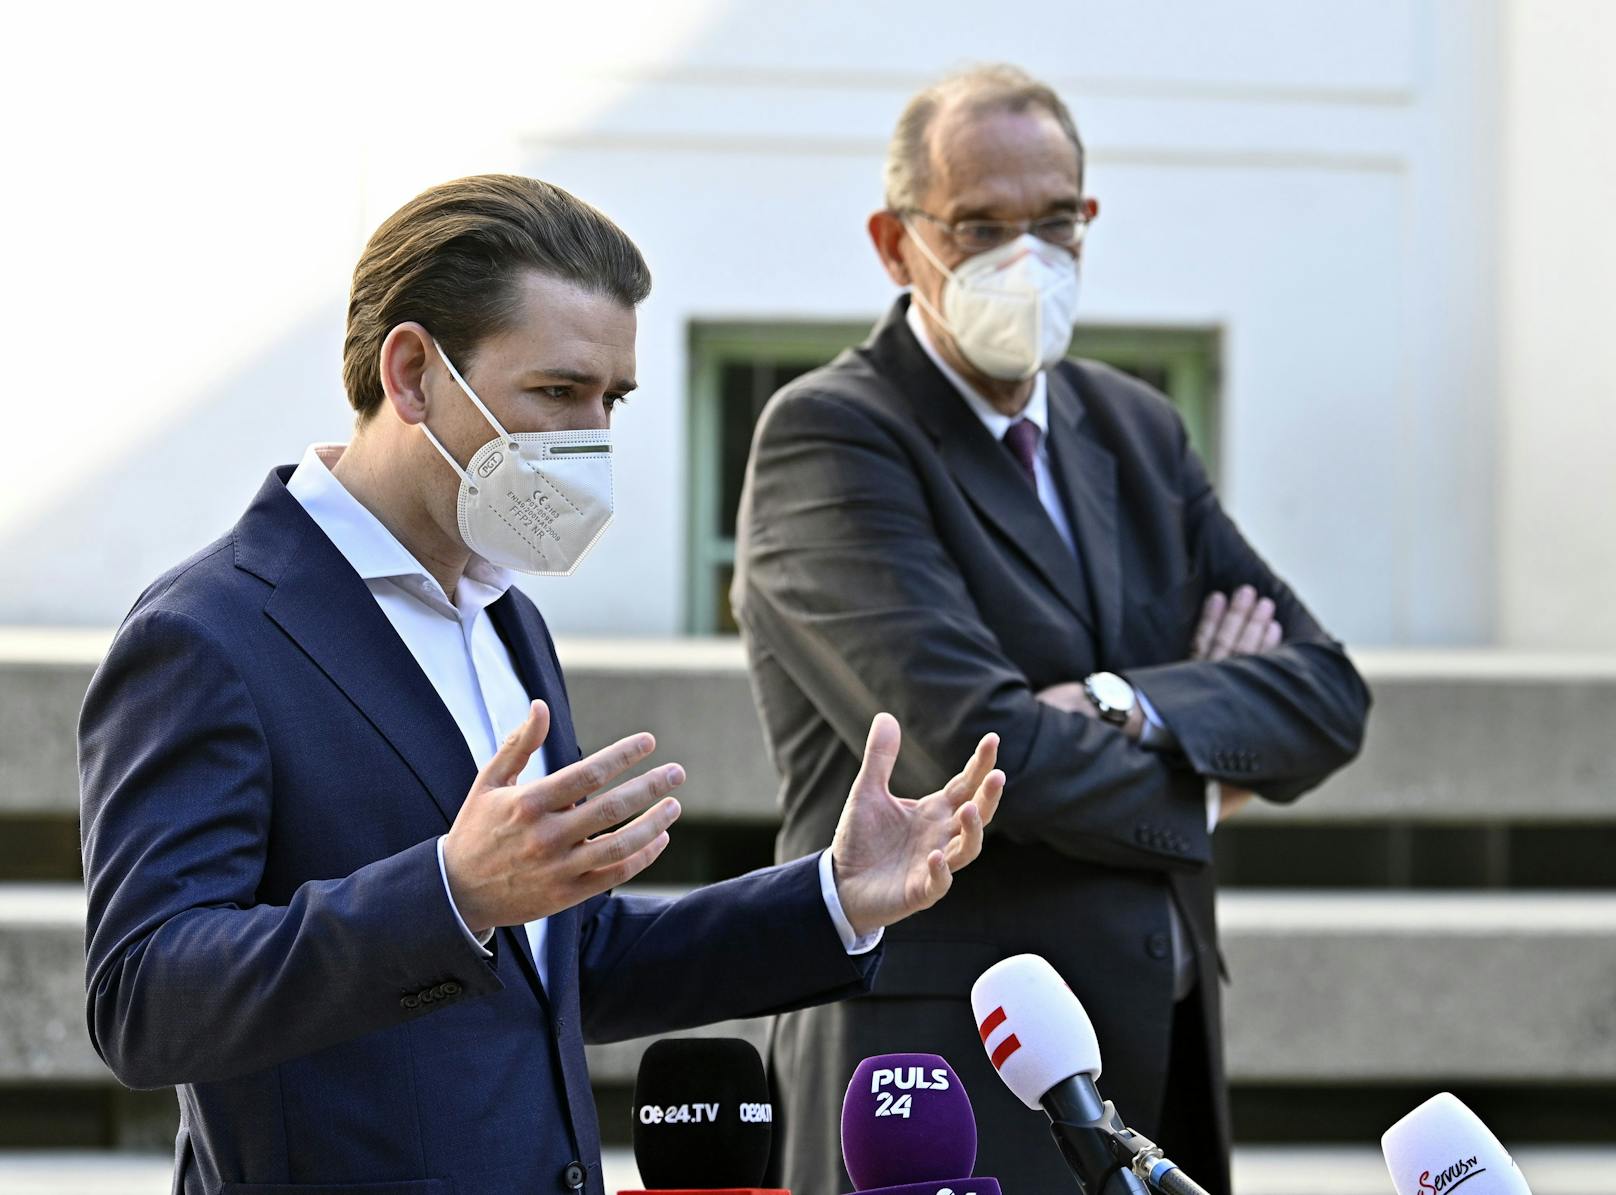 Bundeskanzler Sebastian Kurz und Bildungsminister Heinz Faßmann (beide ÖVP) werden einen Teil des Sommerurlaubs in Kroatien verbringen. "Aber getrennt". 